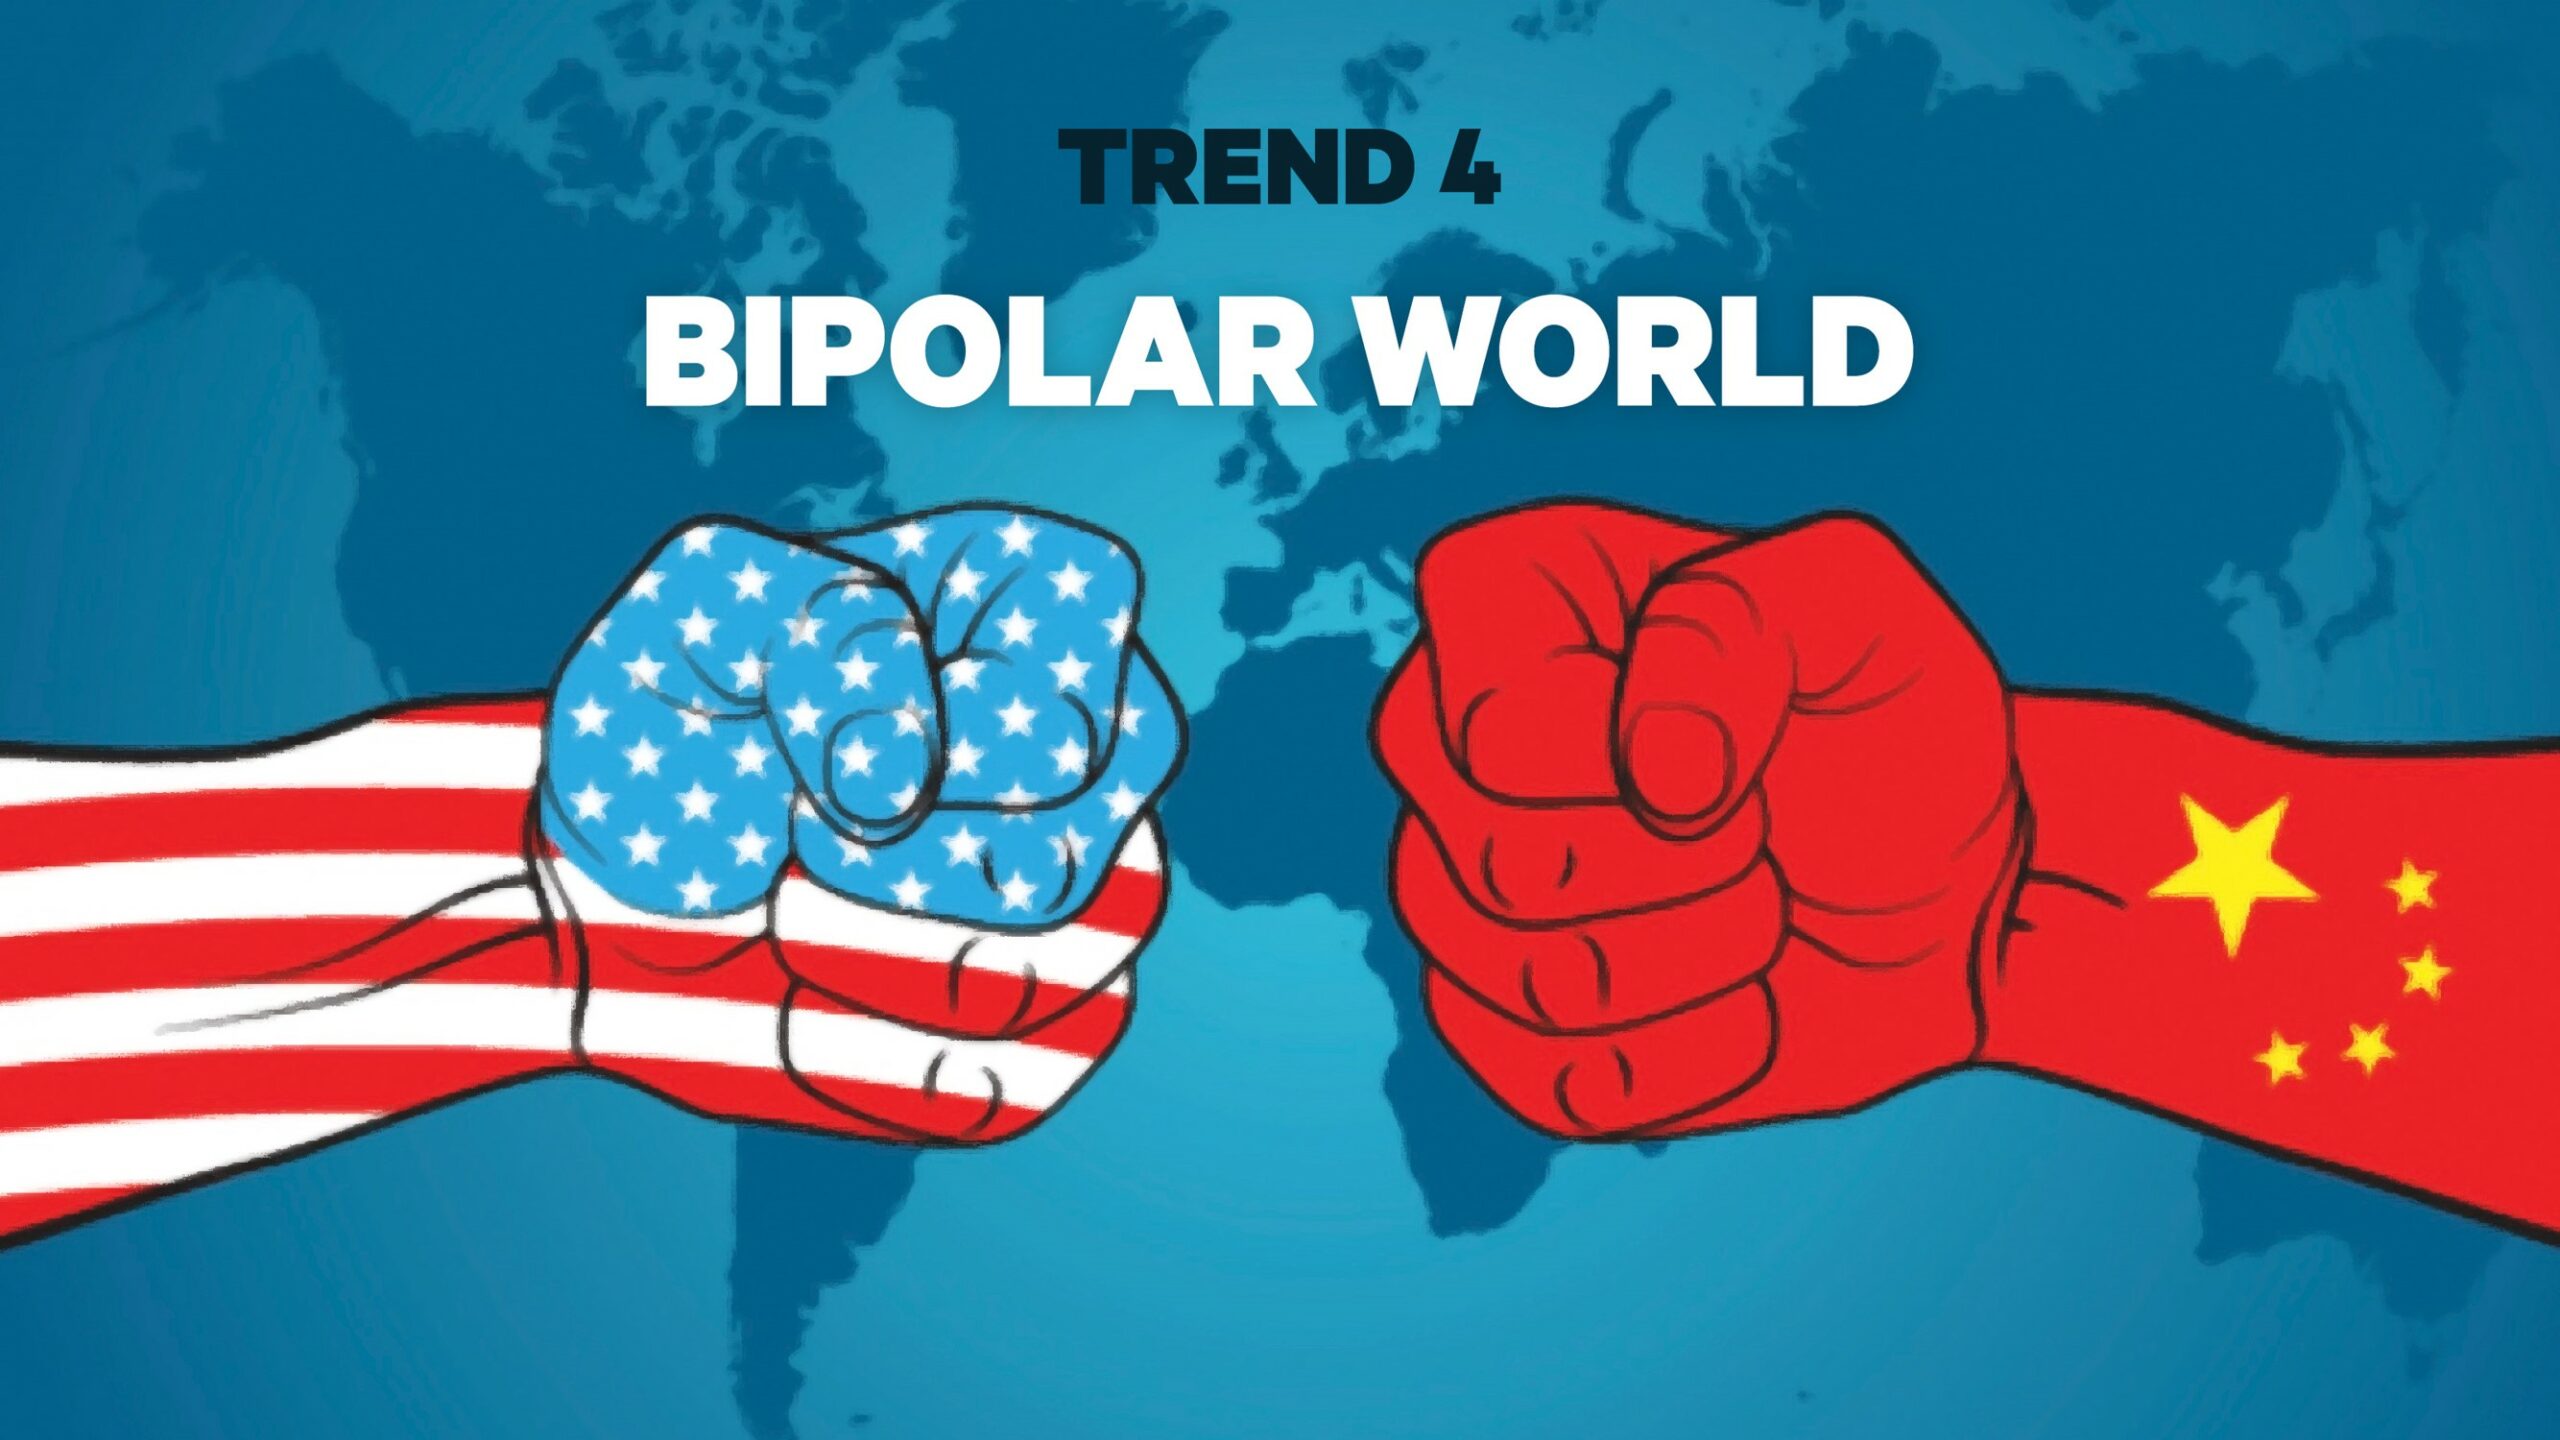 Bipolar world